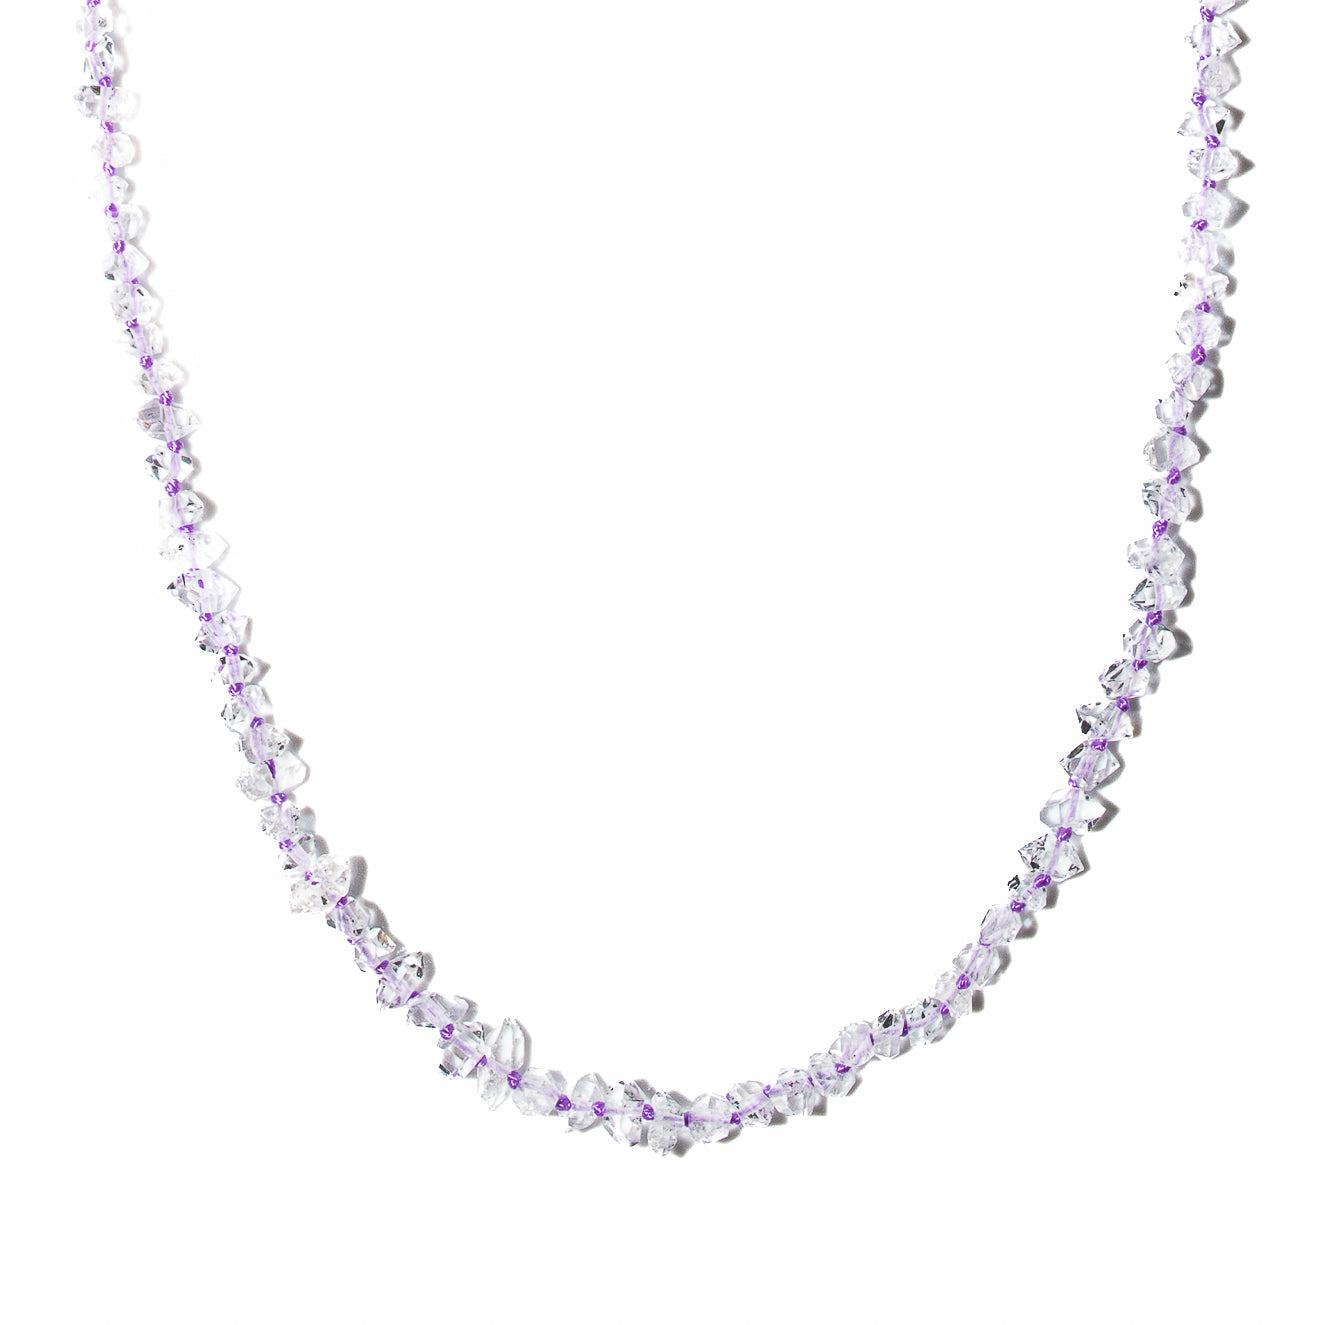 Hackamore Diamond Necklace with Lavender Cord